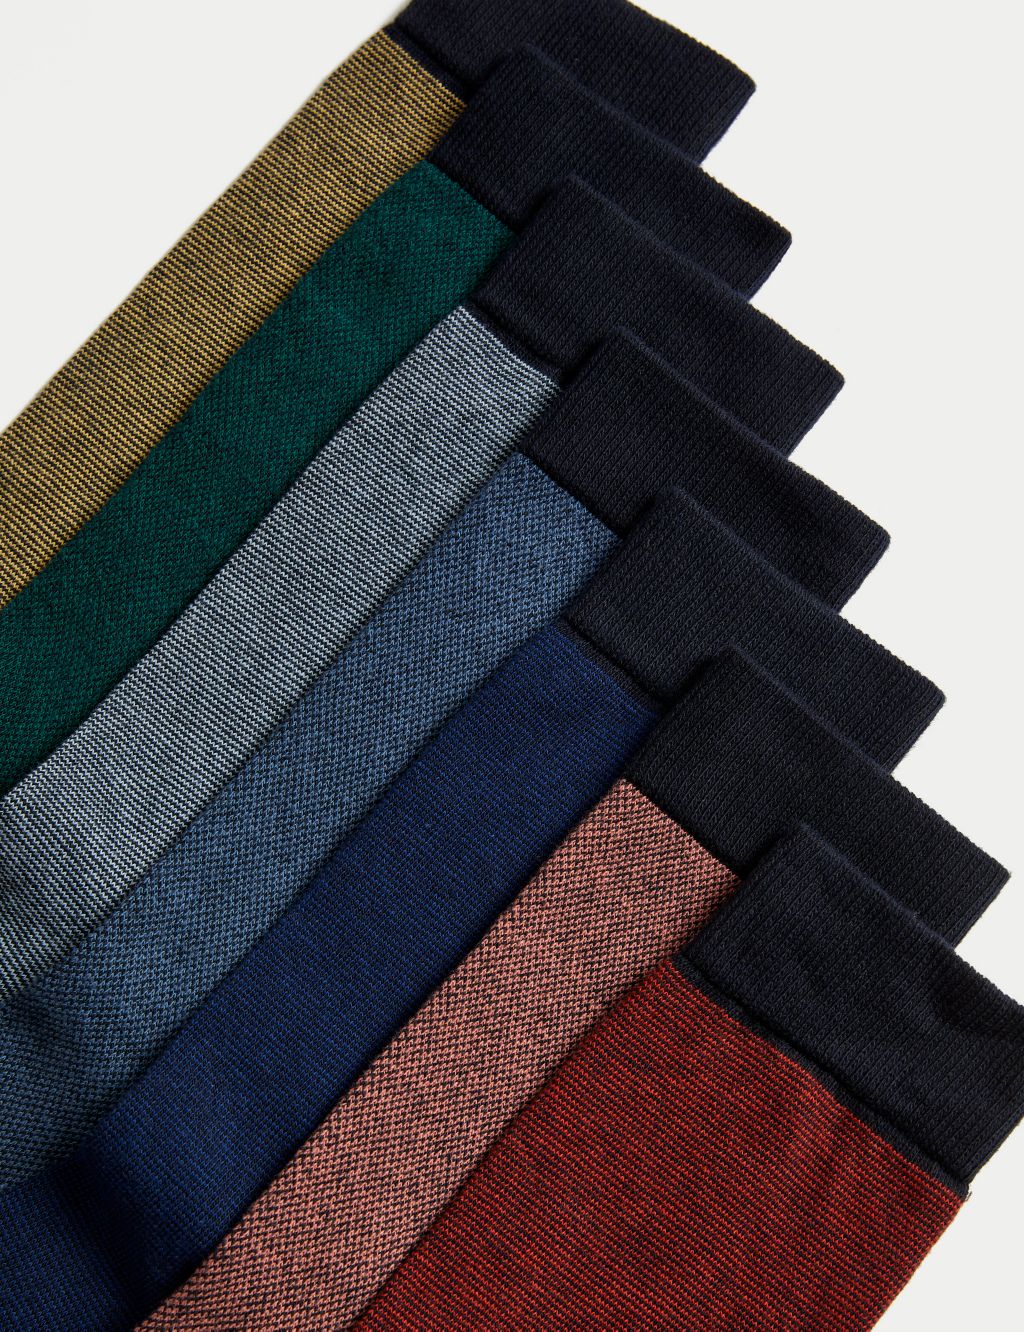 7pk Cool & Fresh™ Striped Cotton Rich Socks image 2